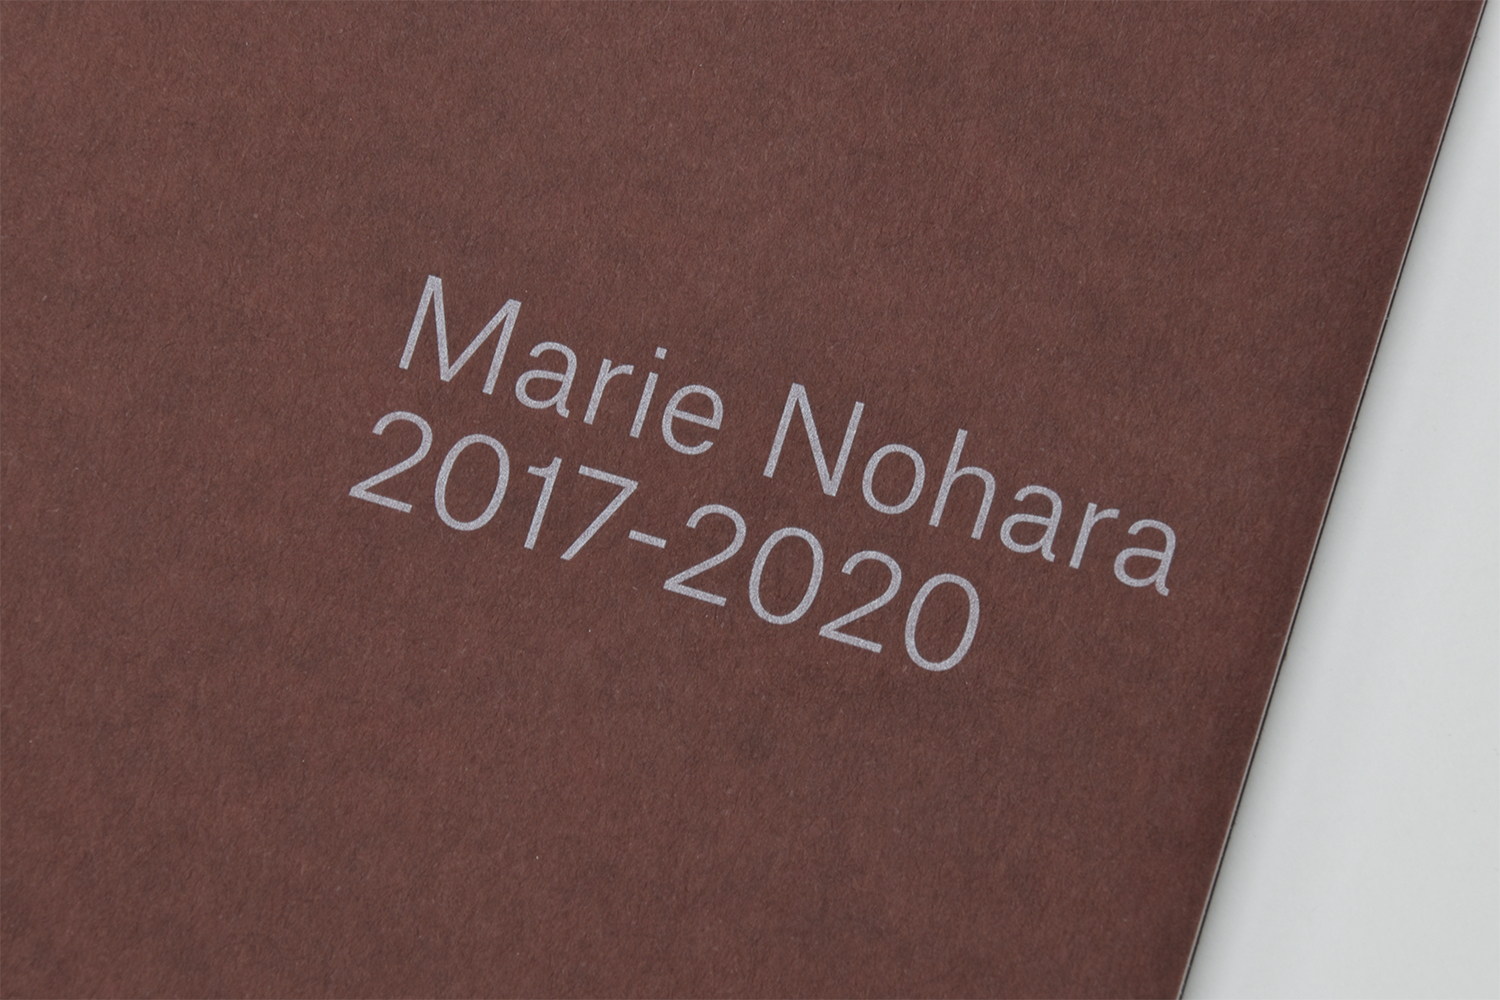 Marie Nohara 2017-2020